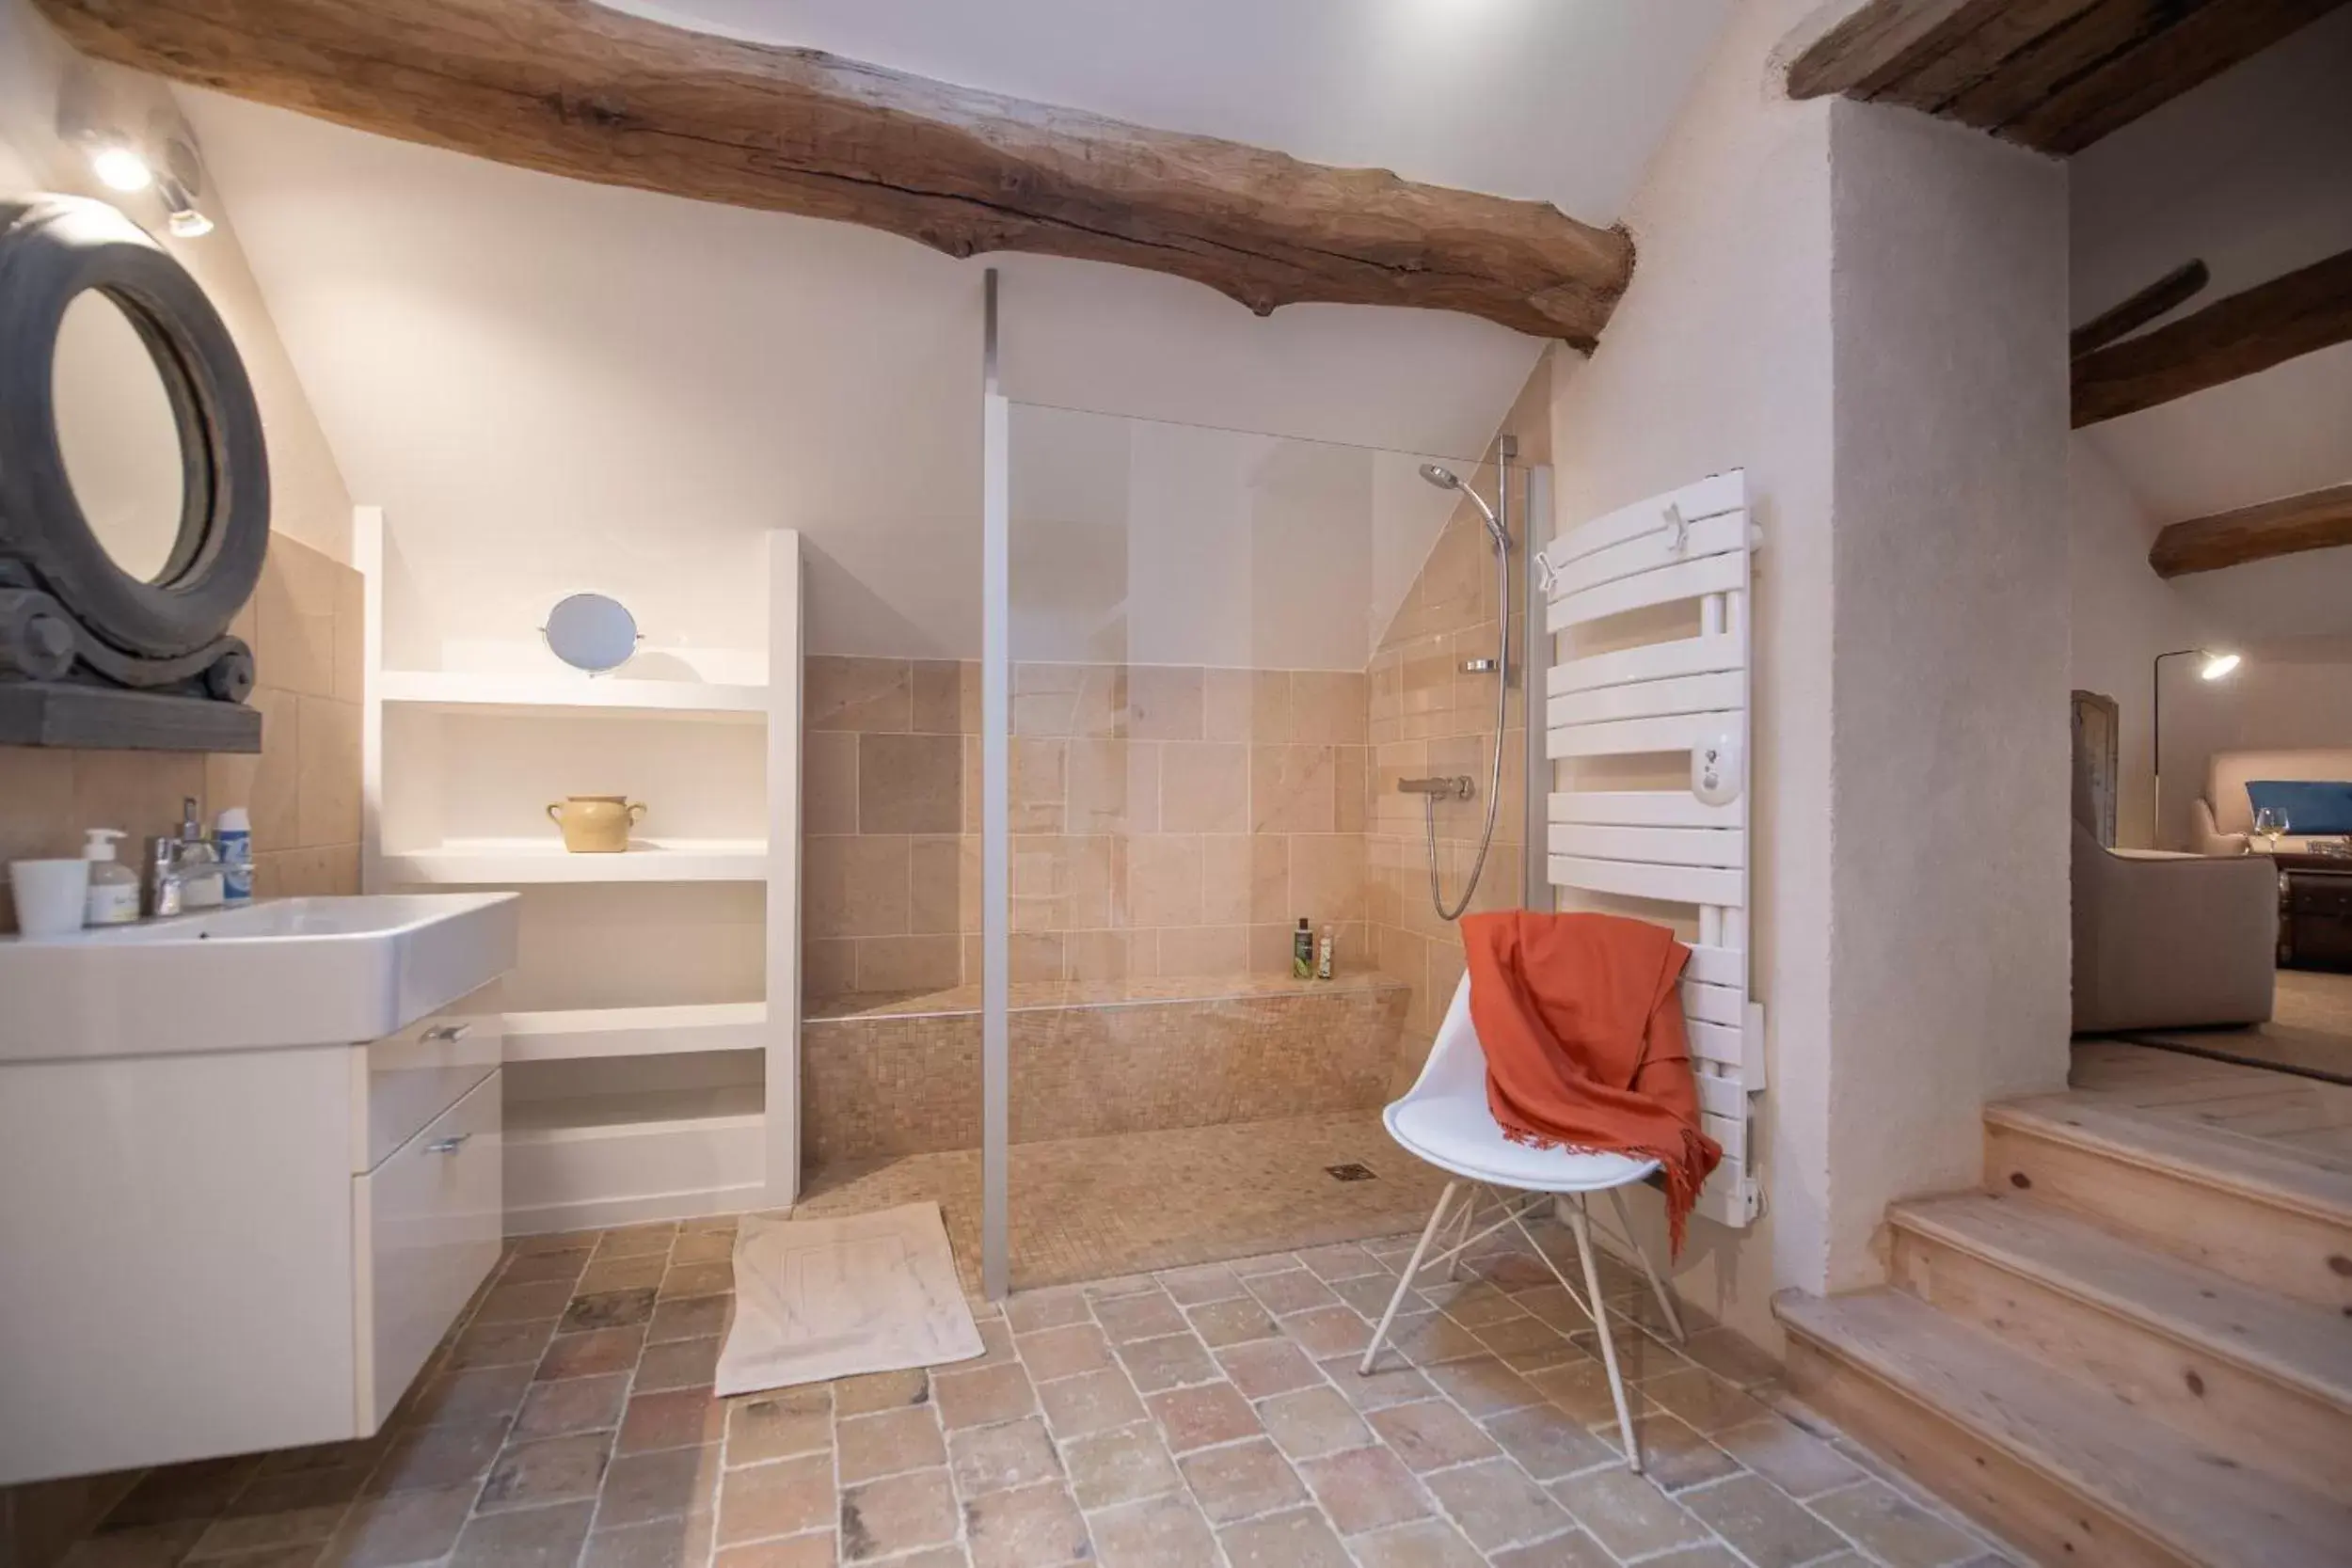 Shower, Bathroom in Clos Saint Jacques - Maison d'Hôtes